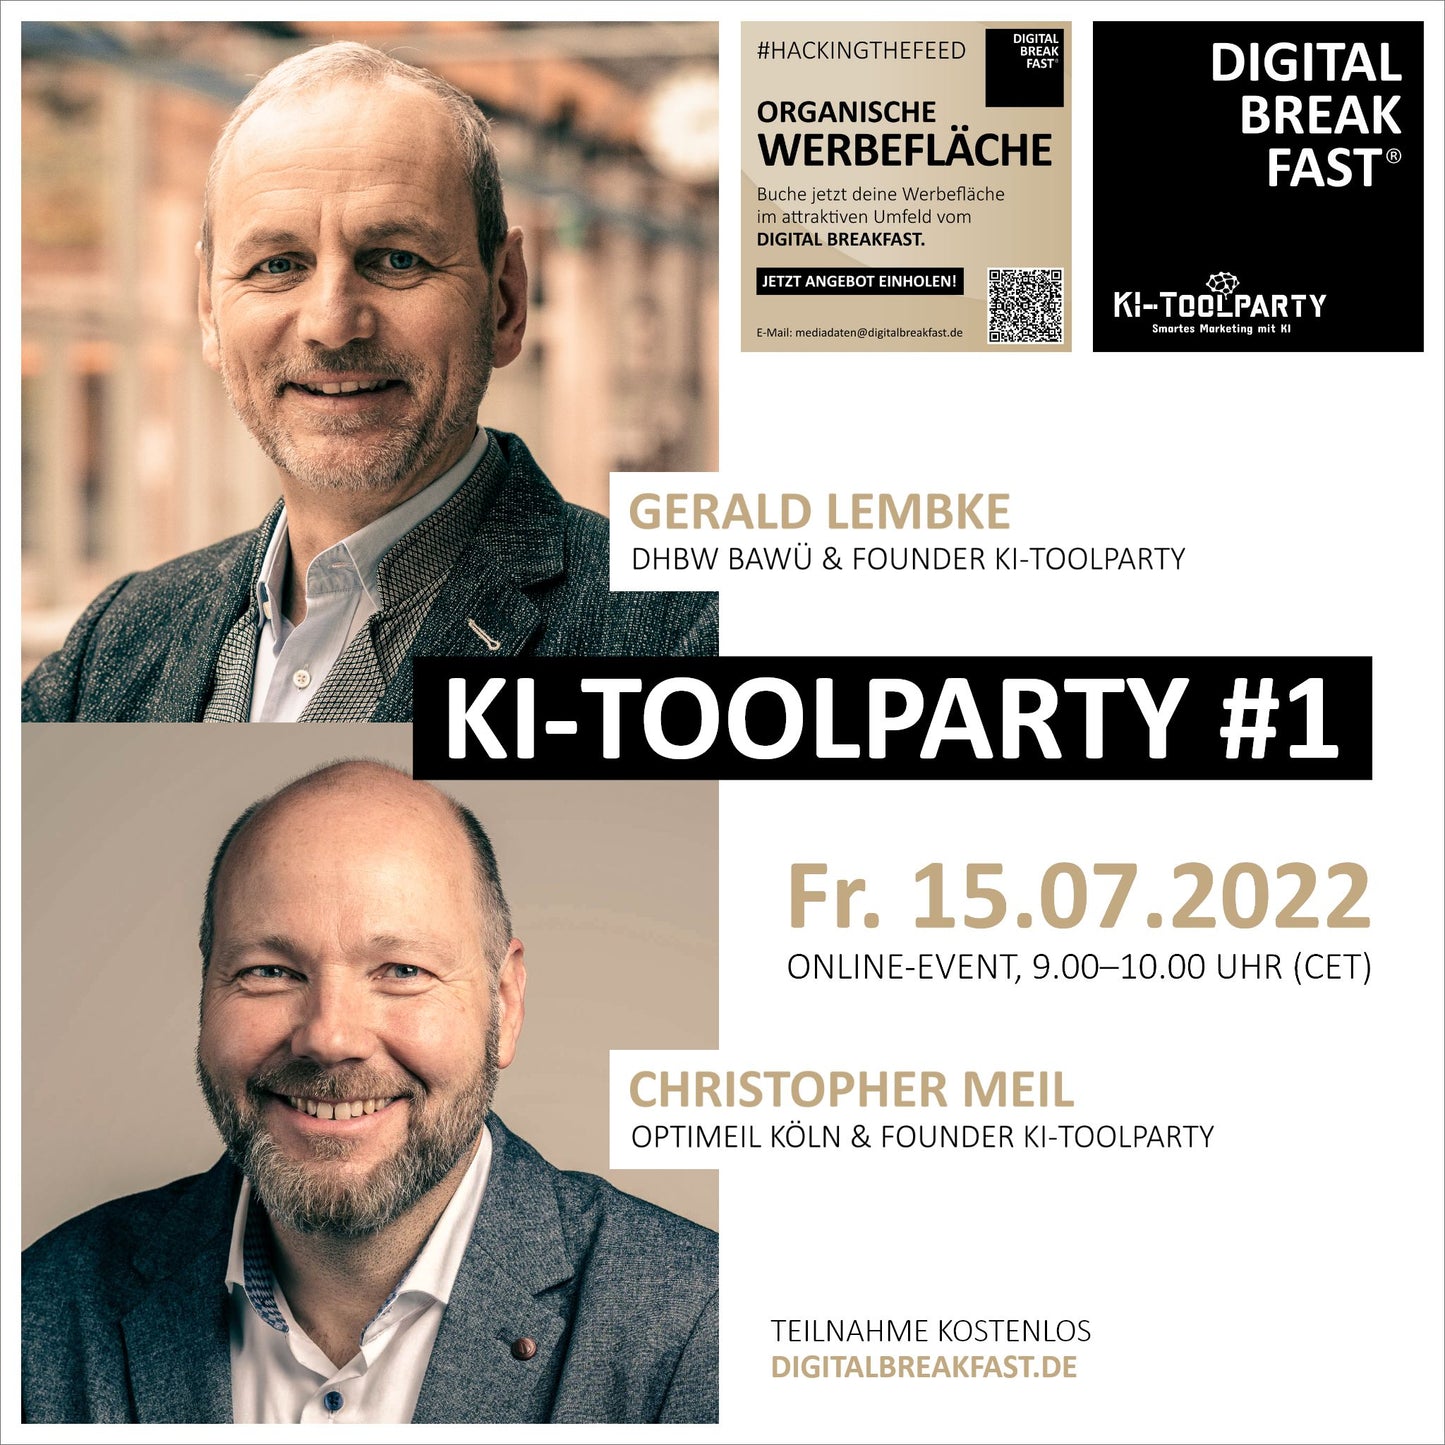 15.07.2022 | KI-TOOLPARTY #1 "Überzeugend kommunizieren" |  Gerald Lembke | DHBW BAWÜ & Founder KI-Toolparty & Christopher Meil | Optimeil Köln & Founder KI-Toolparty